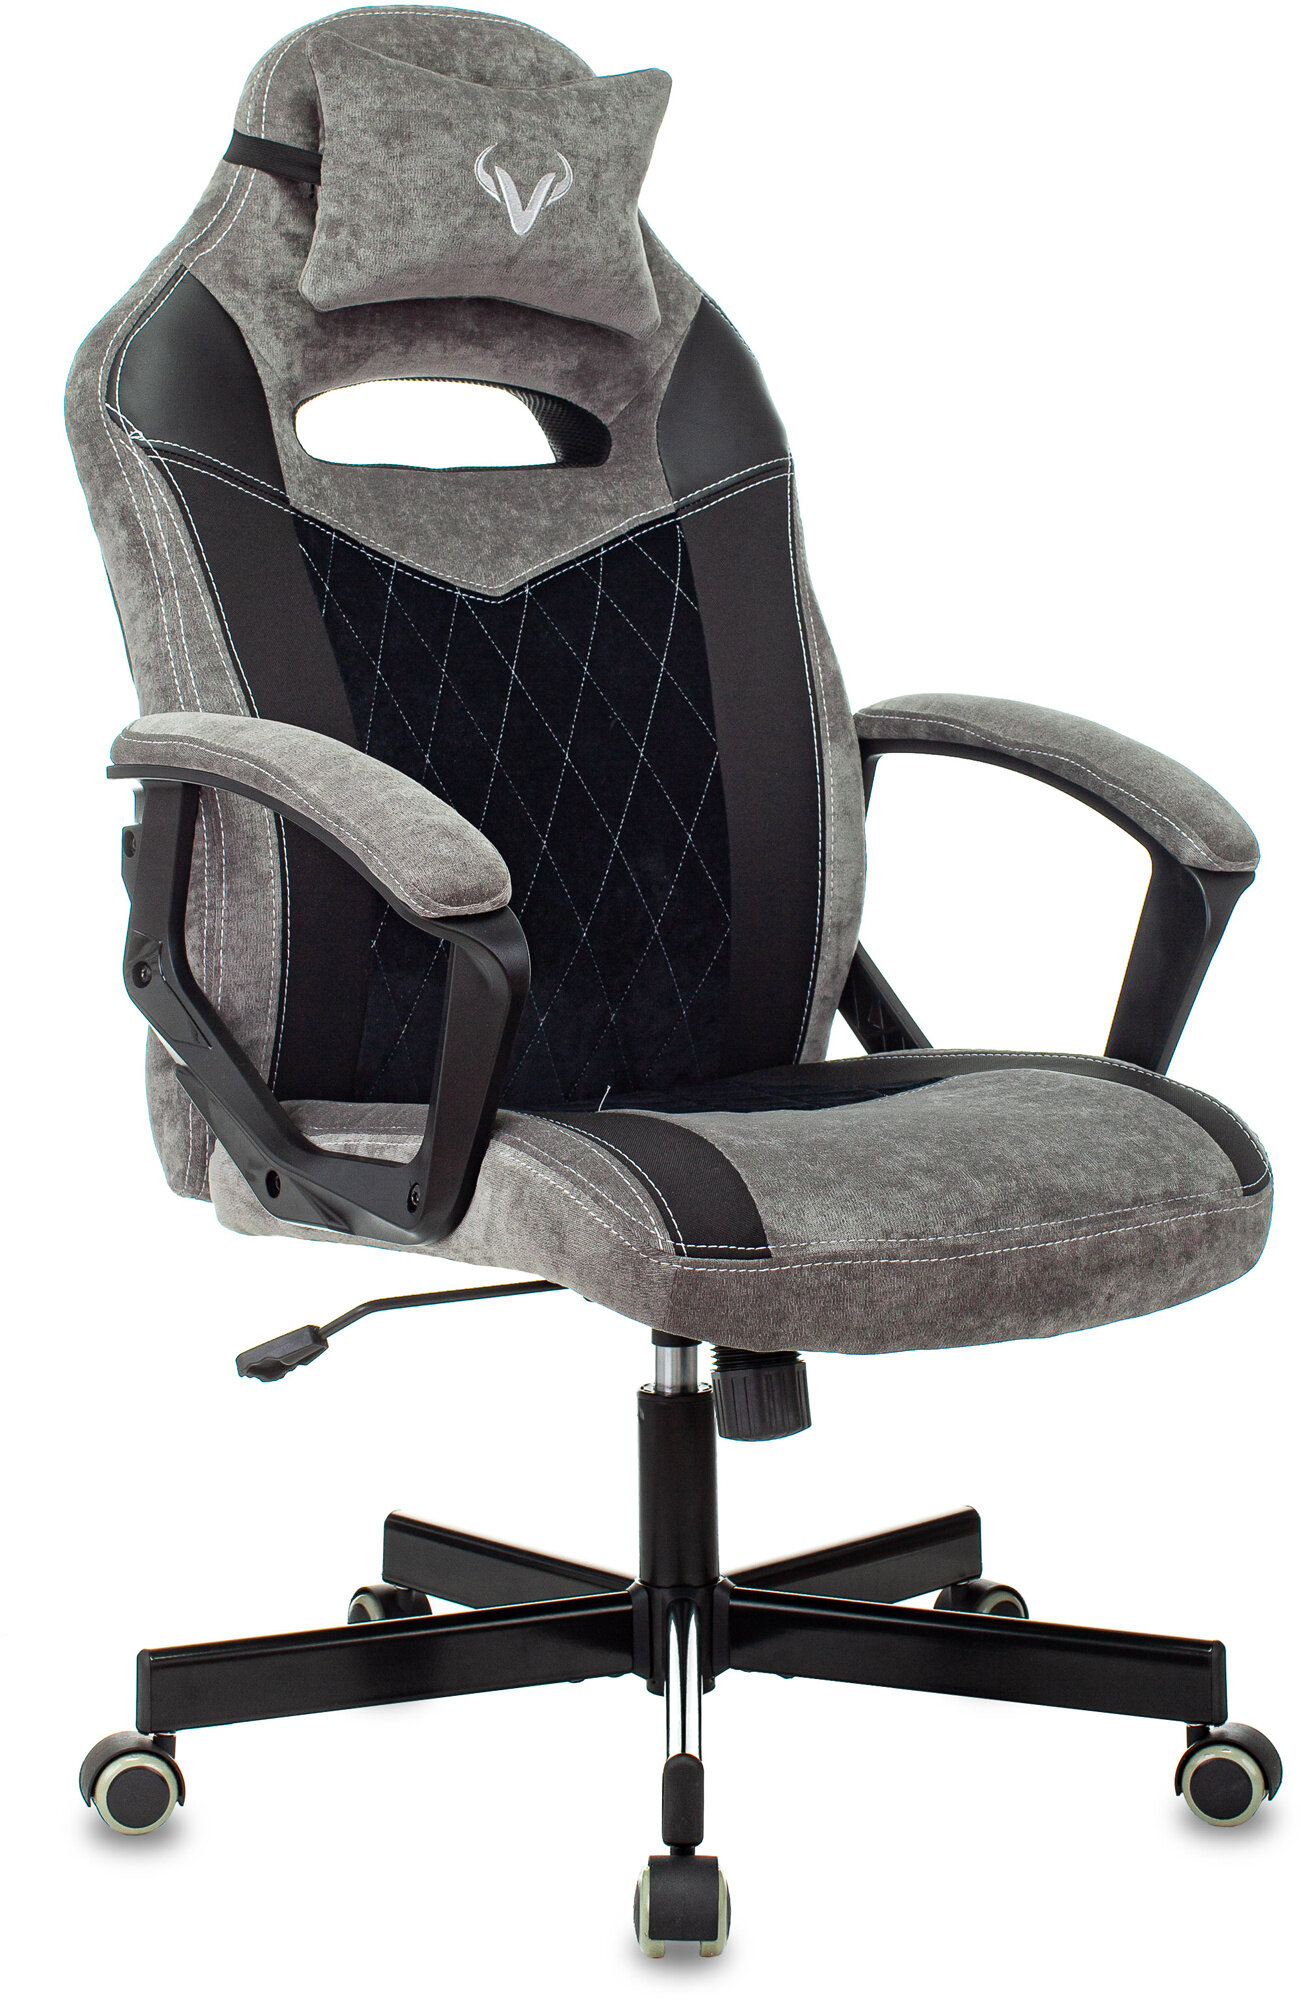 Игровое кресло ZOMBIE VIKING 6 KNIGHT B, серый/черный, с мягкими подлокотниками